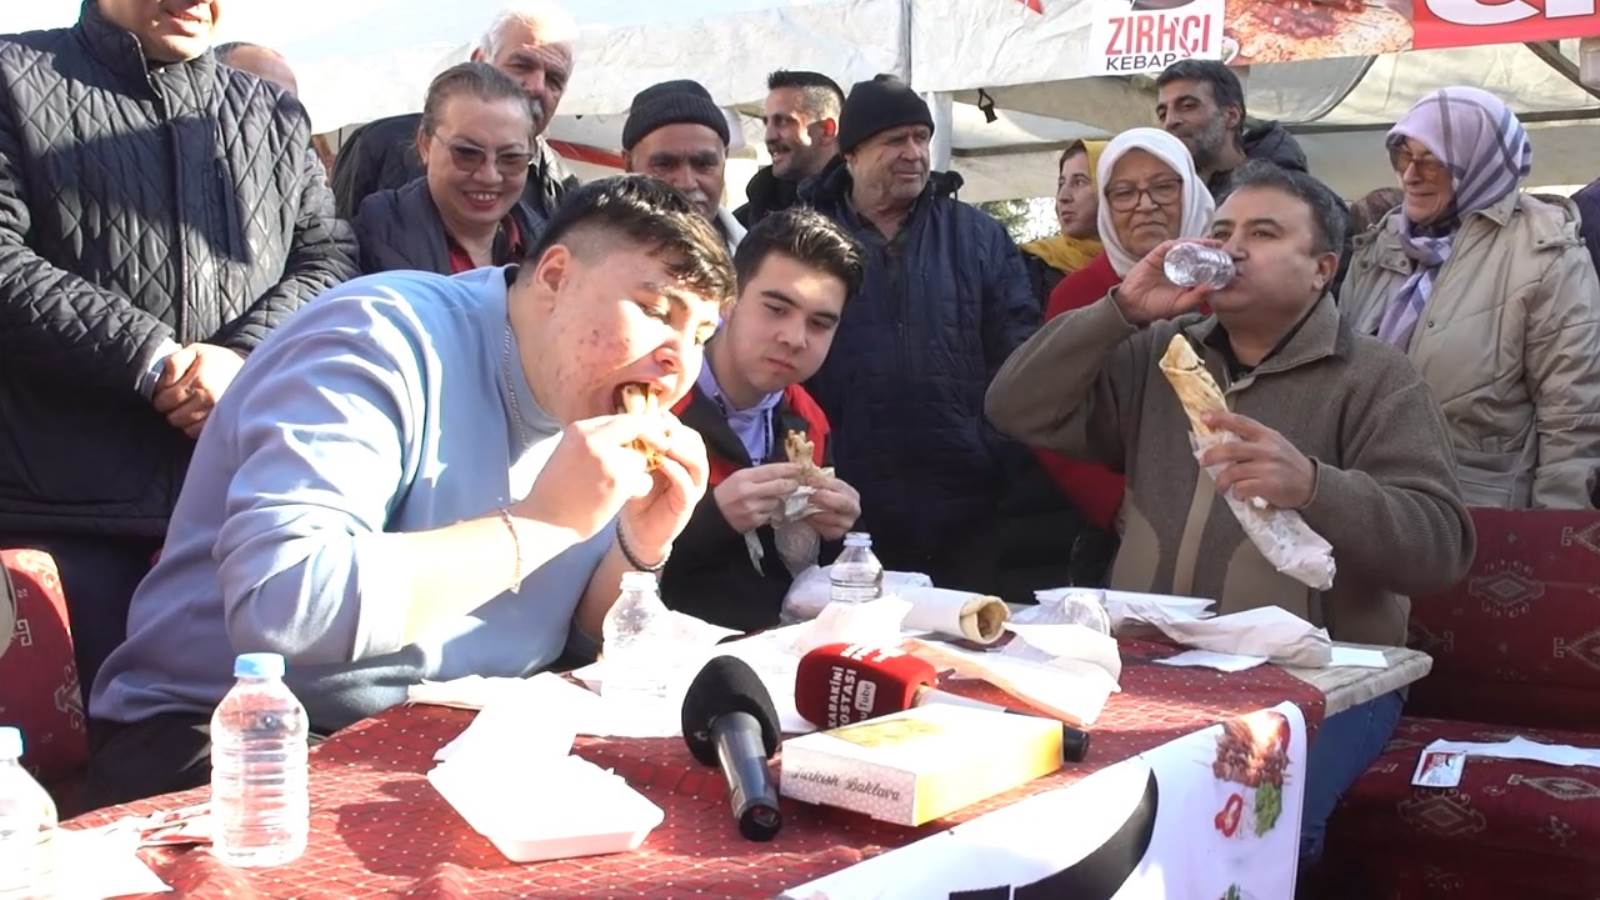 Gaziantep Yemek Şenliği'nde kebap yeme yarışması yapıldı, baba oğul kıyasıya yarıştı